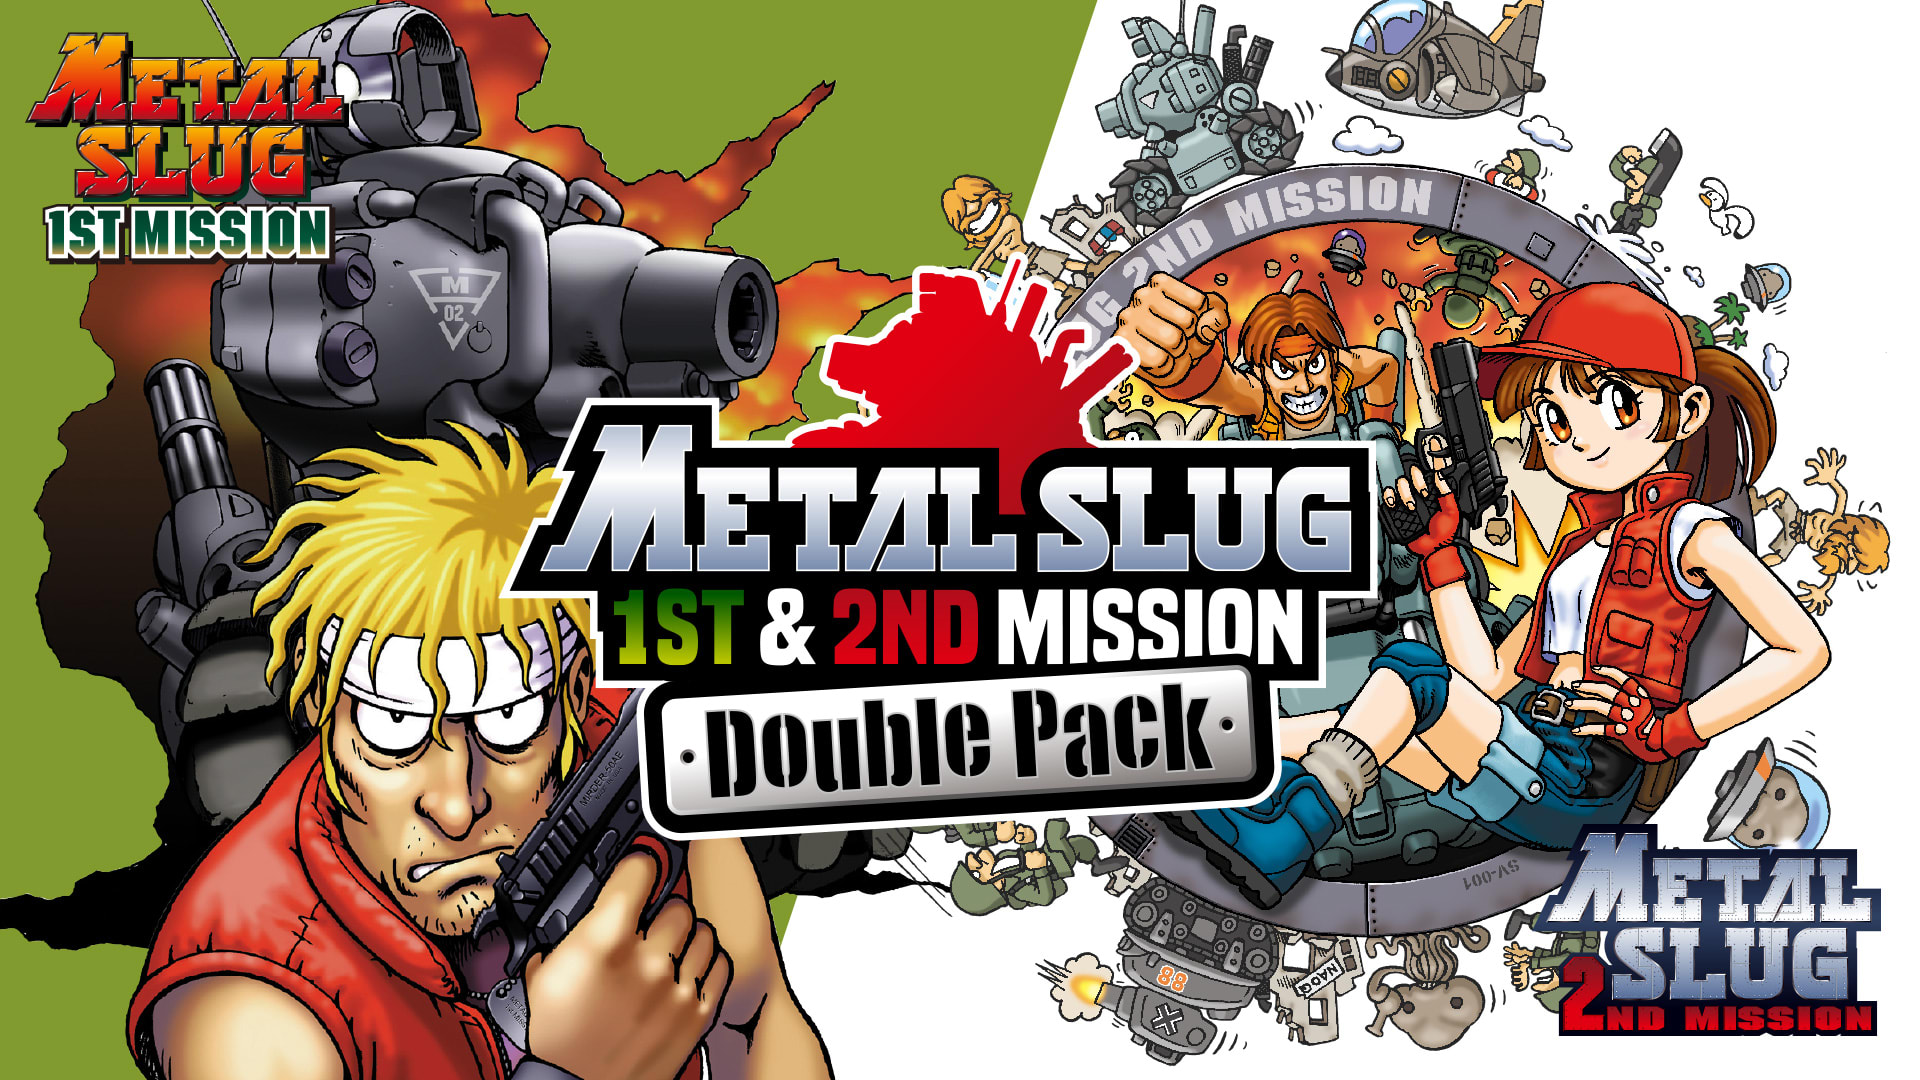 "METAL SLUG 1st & 2nd MISSION" Double Pack